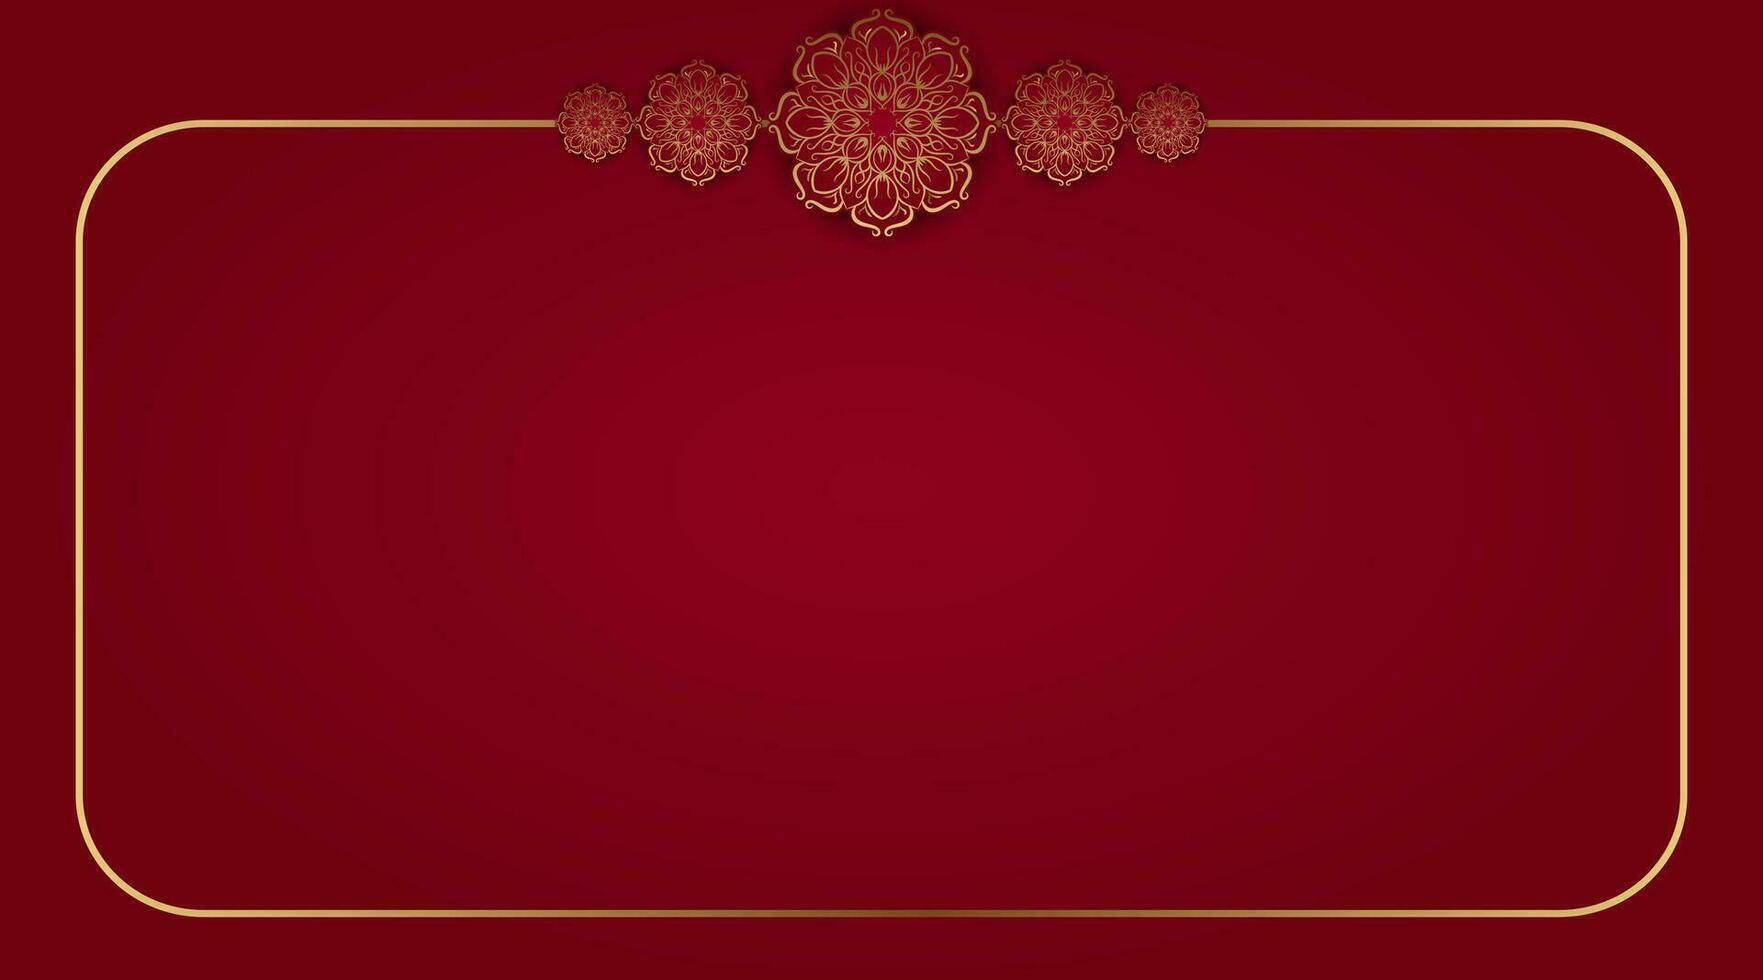 röd bakgrund med dekorativ mandala vektor